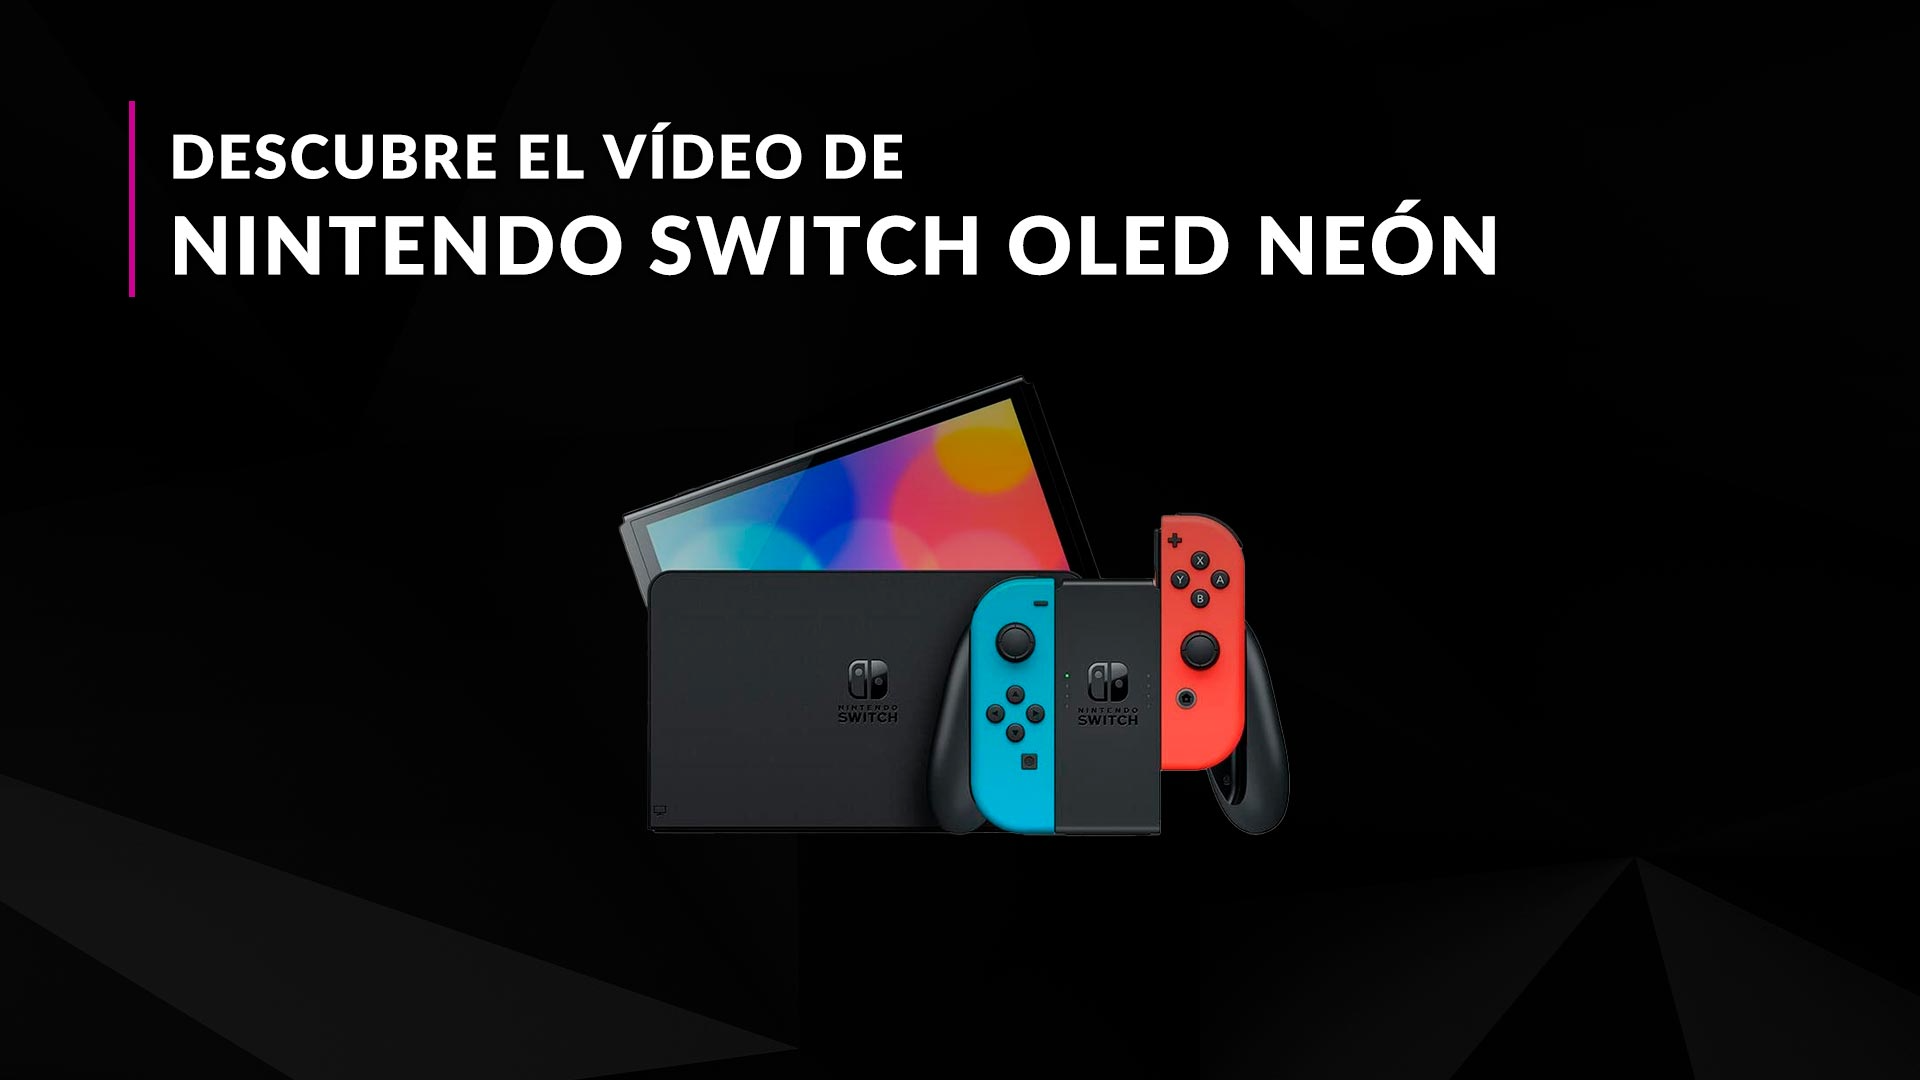 Consola Nintendo Switch OLED 64GB Neón con Mario Kart 8 Deluxe y